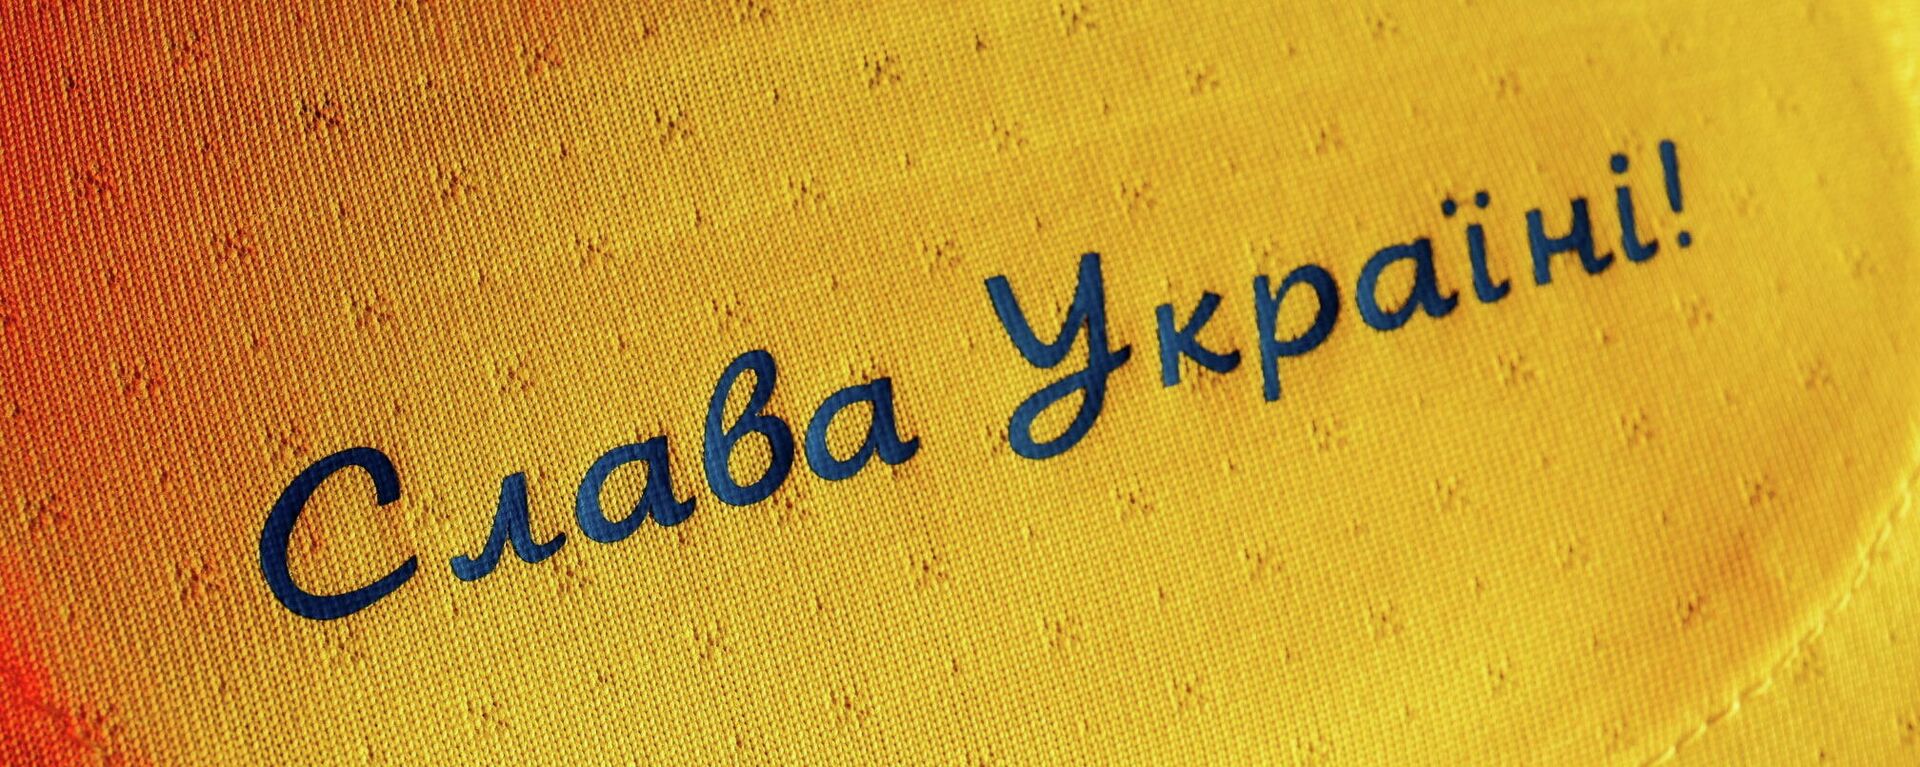 Camiseta de la selección ucraniana de fútbol con el lema ¡Gloria a Ucrania! - Sputnik Mundo, 1920, 11.06.2021